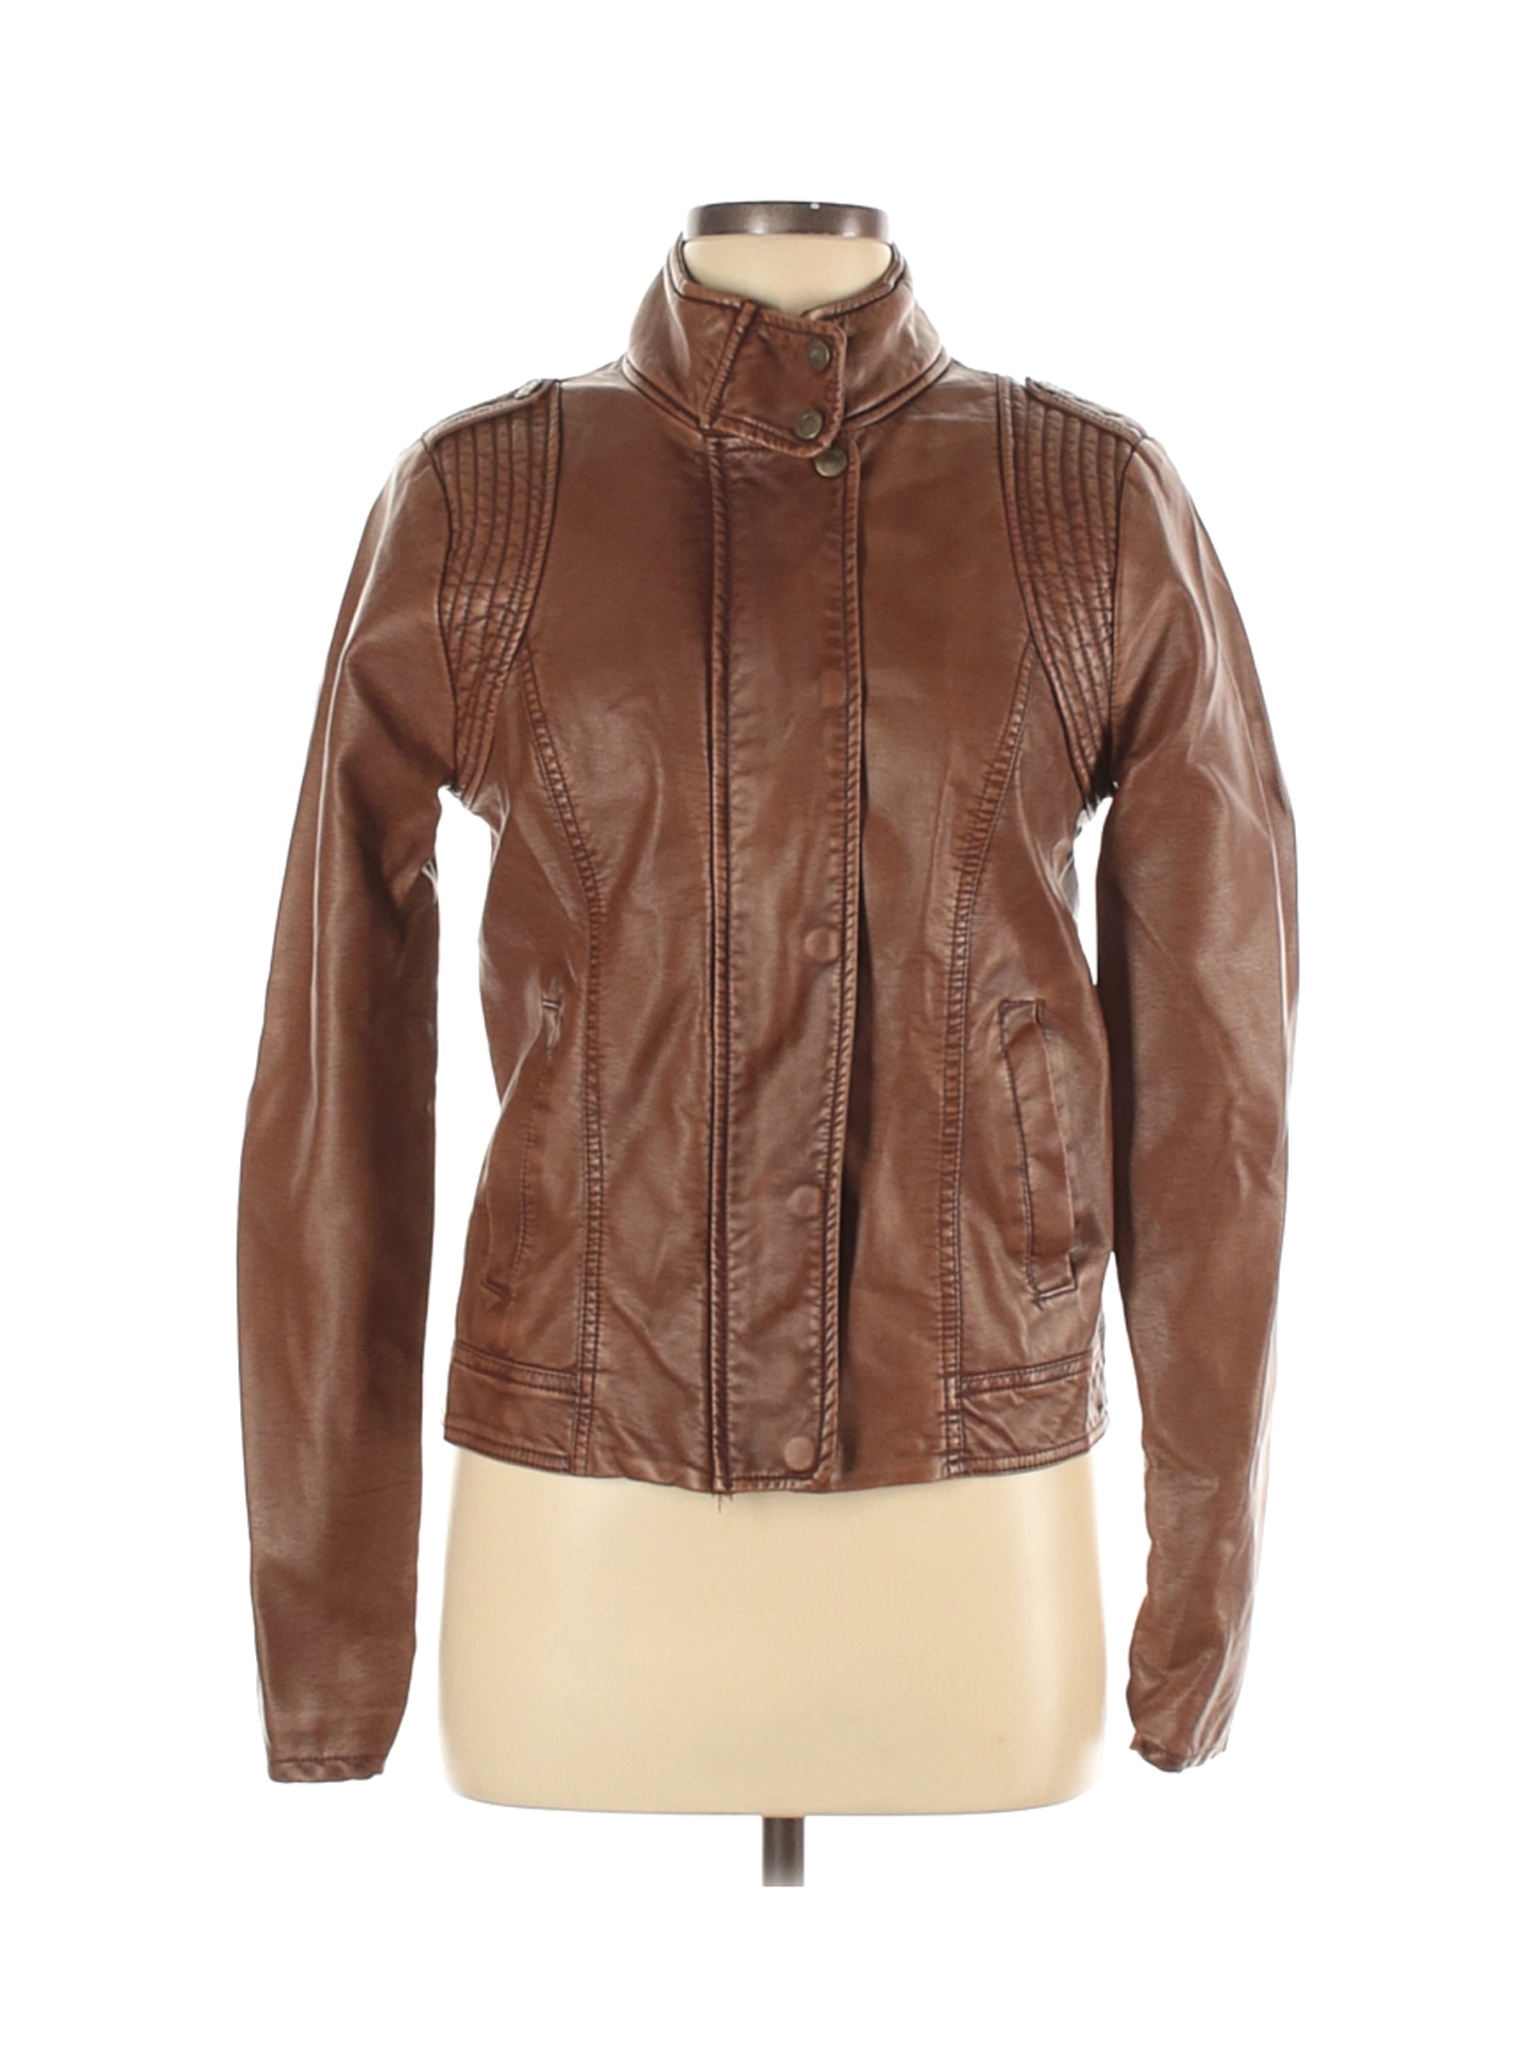 Aeropostale Women Brown Faux Leather Jacket M | eBay